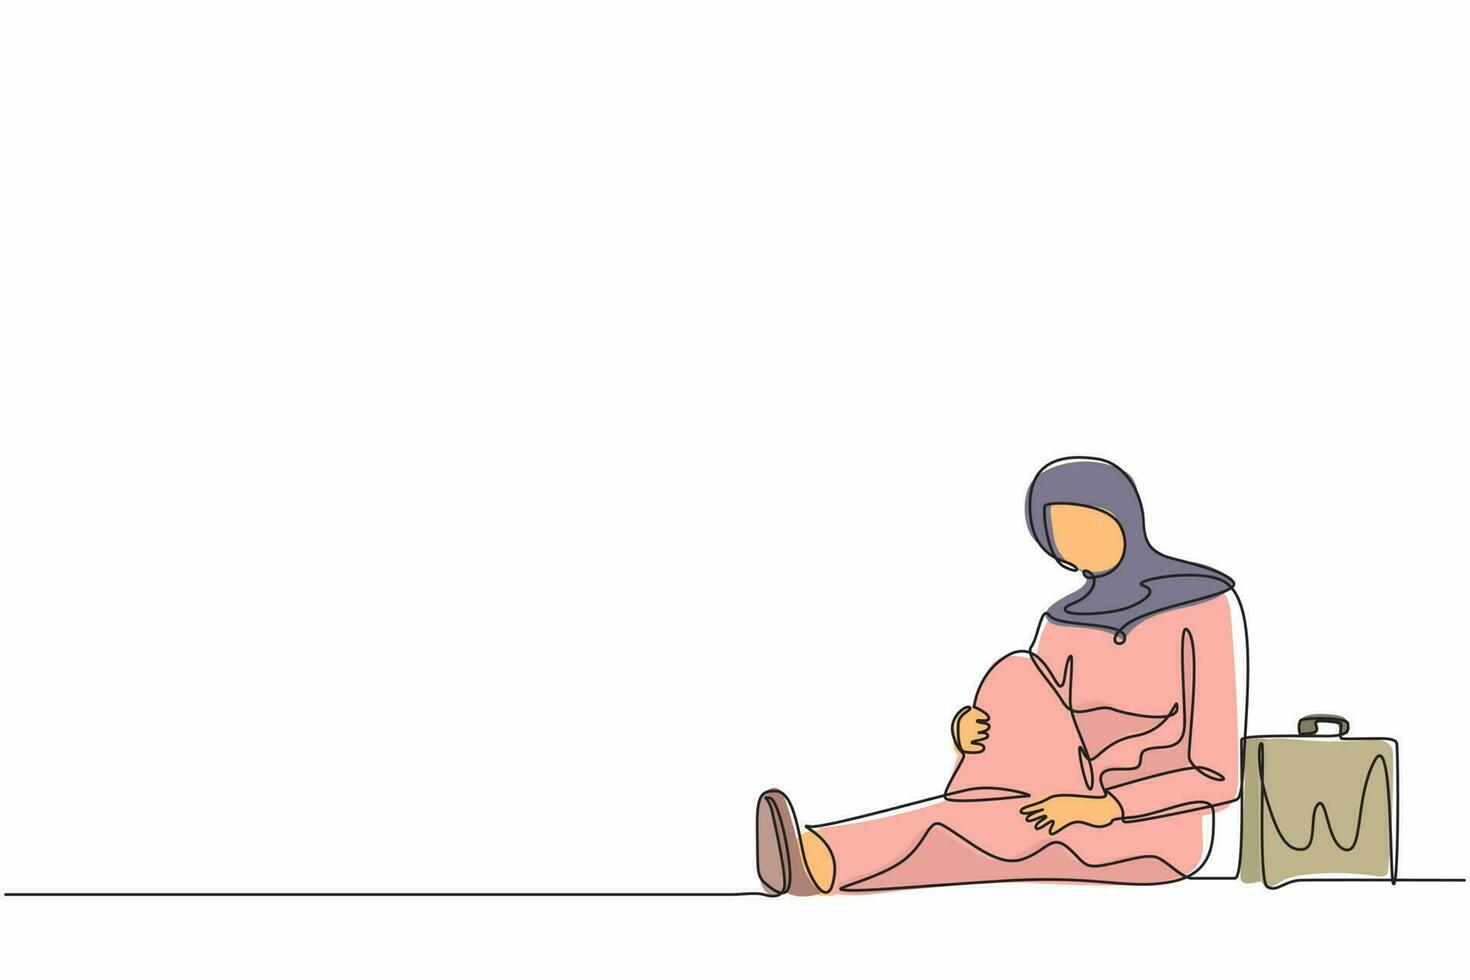 dessin en ligne continue unique femme d'affaires arabe déprimée avec une mallette assise désespérément sur le sol. expression de geste triste d'entrepreneur. syndrome d'épuisement professionnel. vecteur de conception d'une ligne